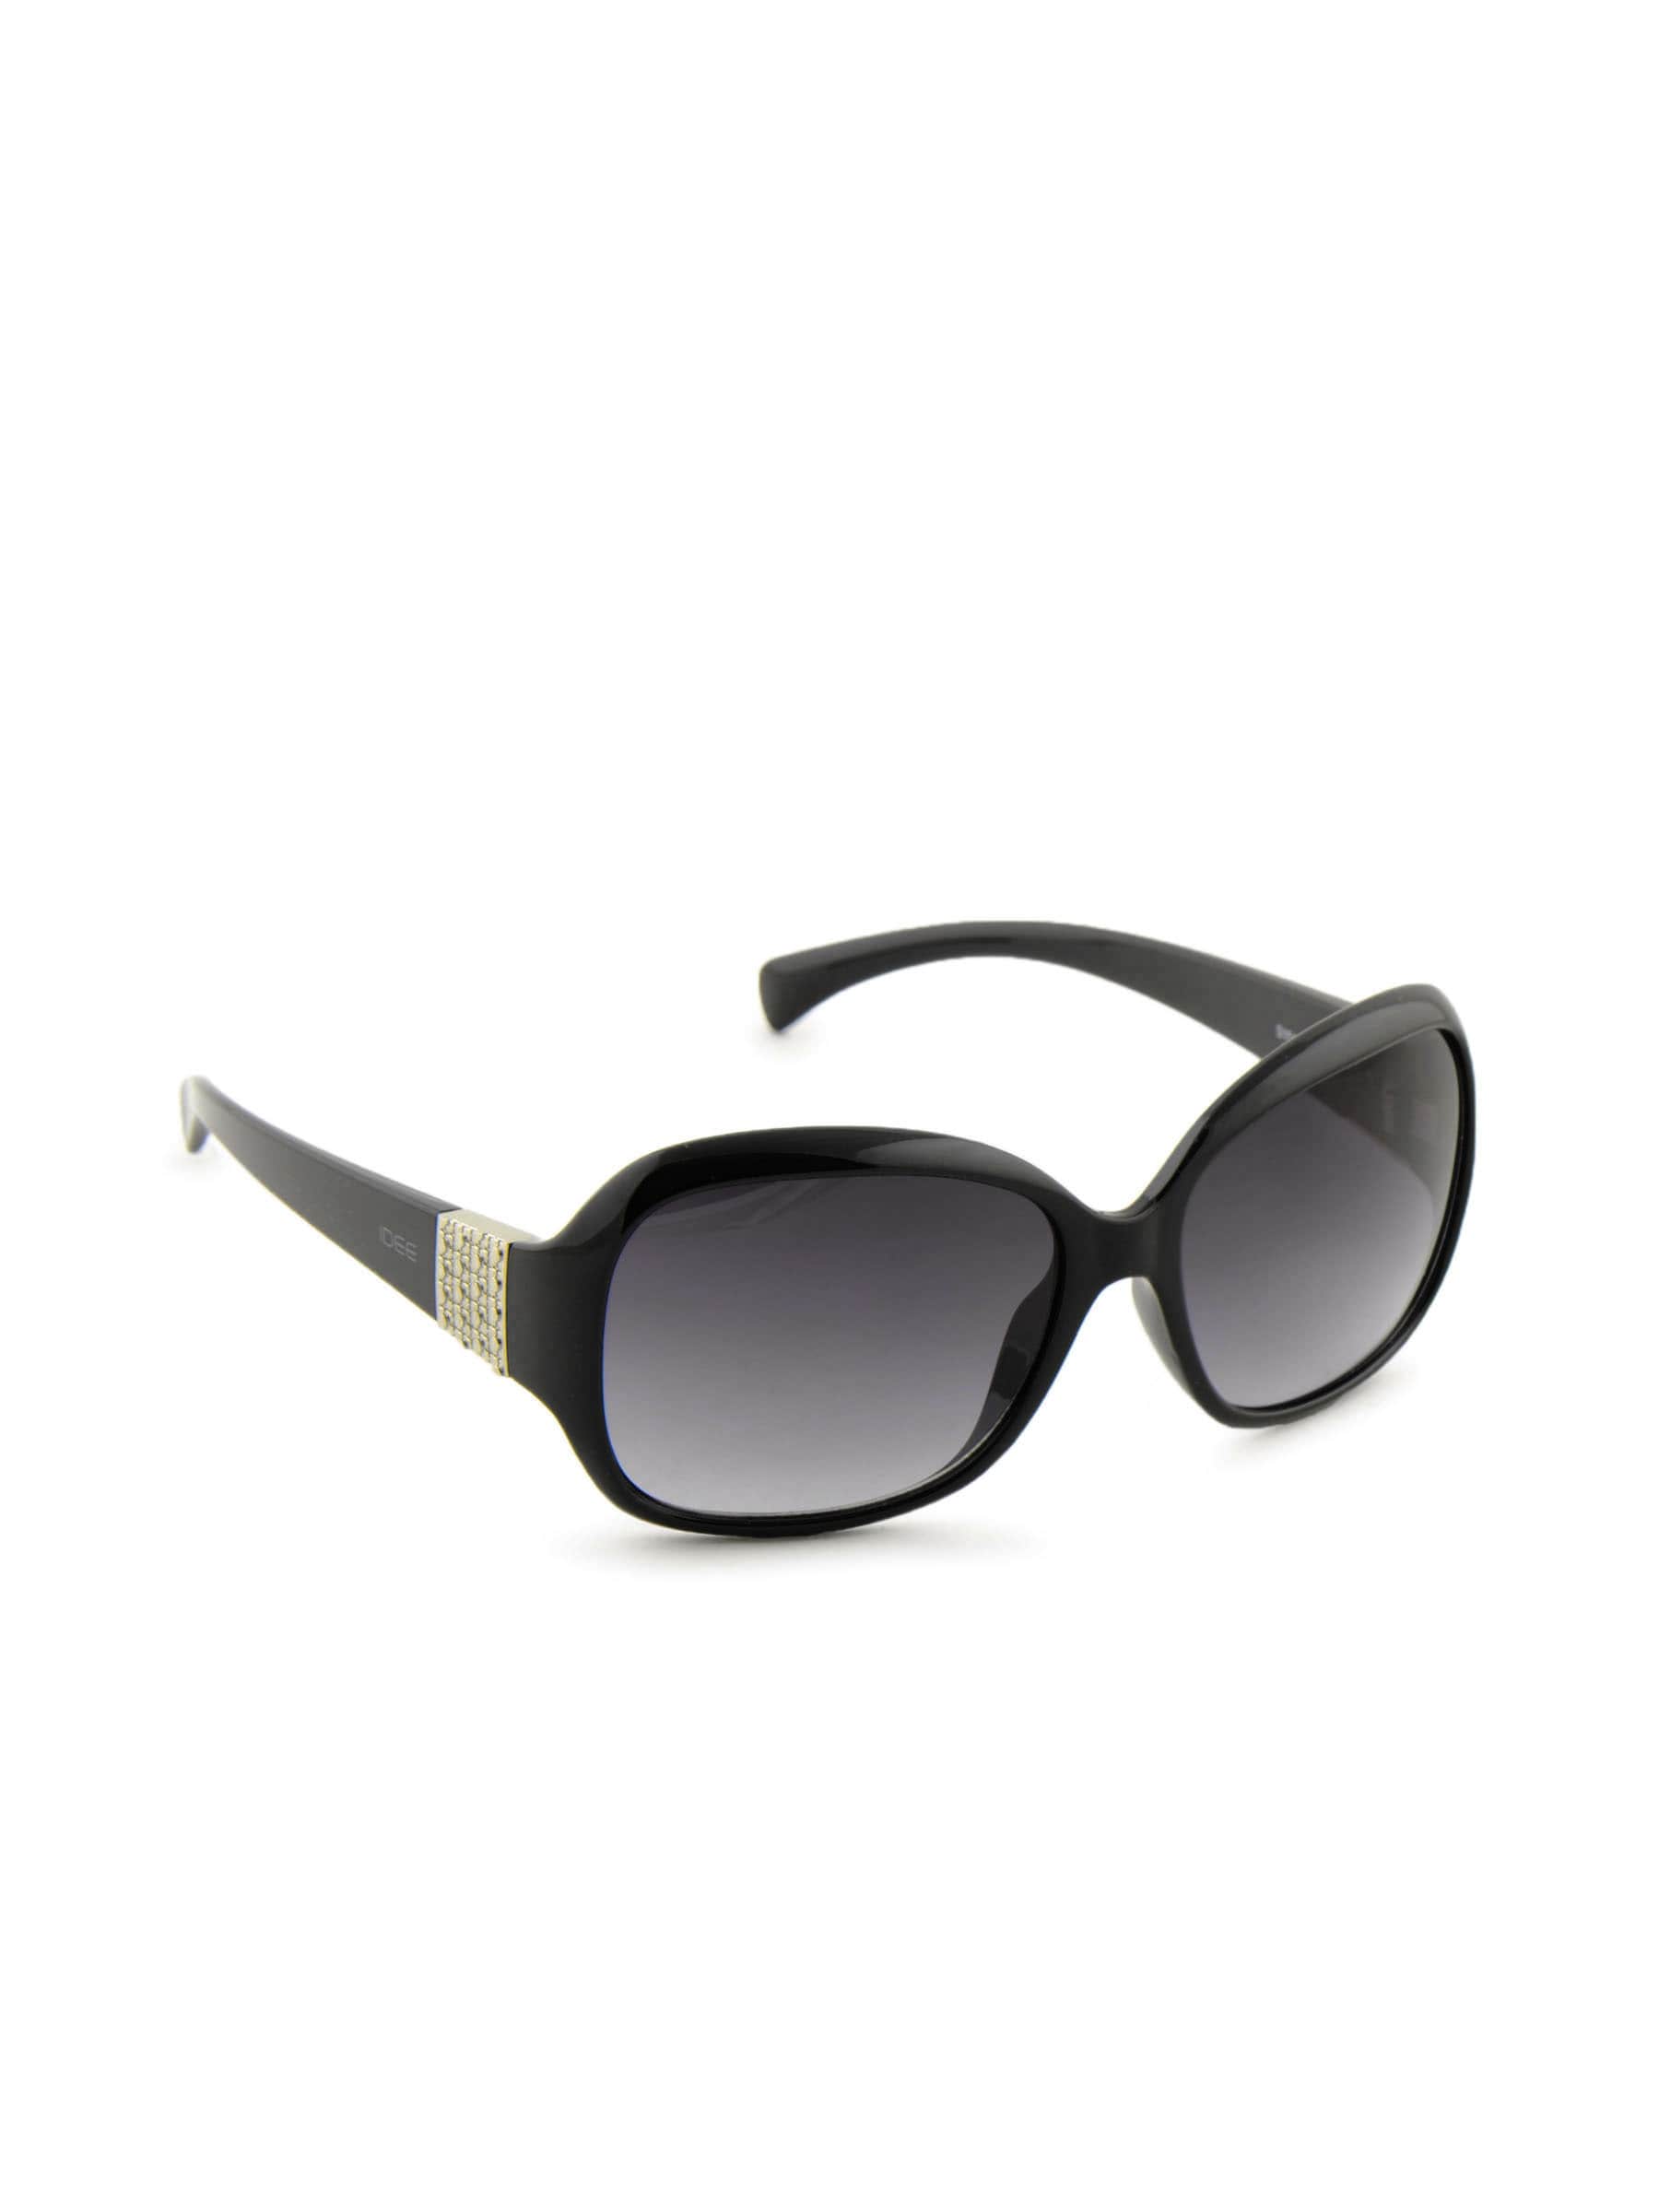 Idee Women Funky Eyewear Black Sunglasses